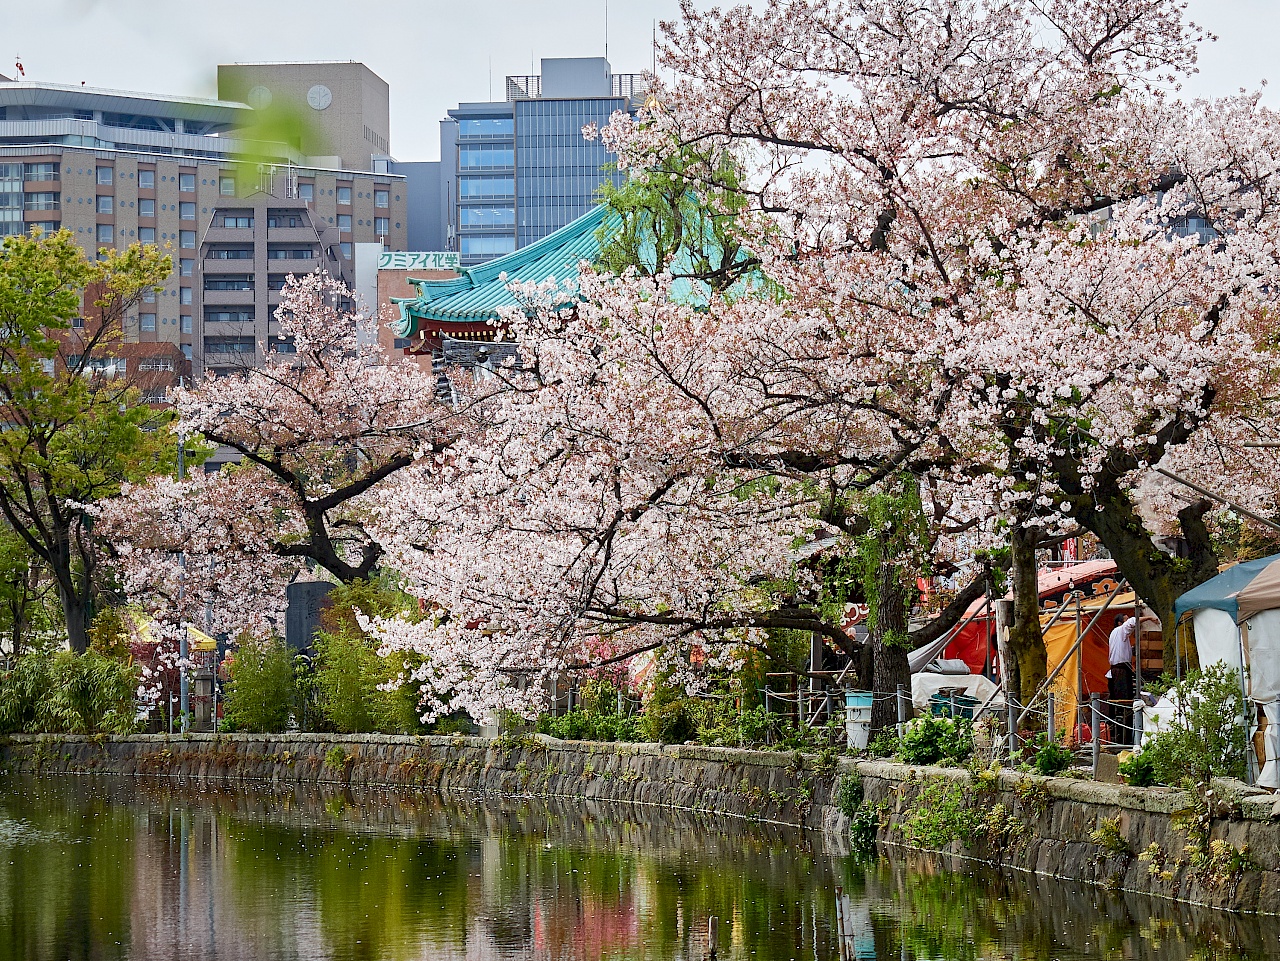 Kirschblüte im Park Ueno-kōen in Tokyo